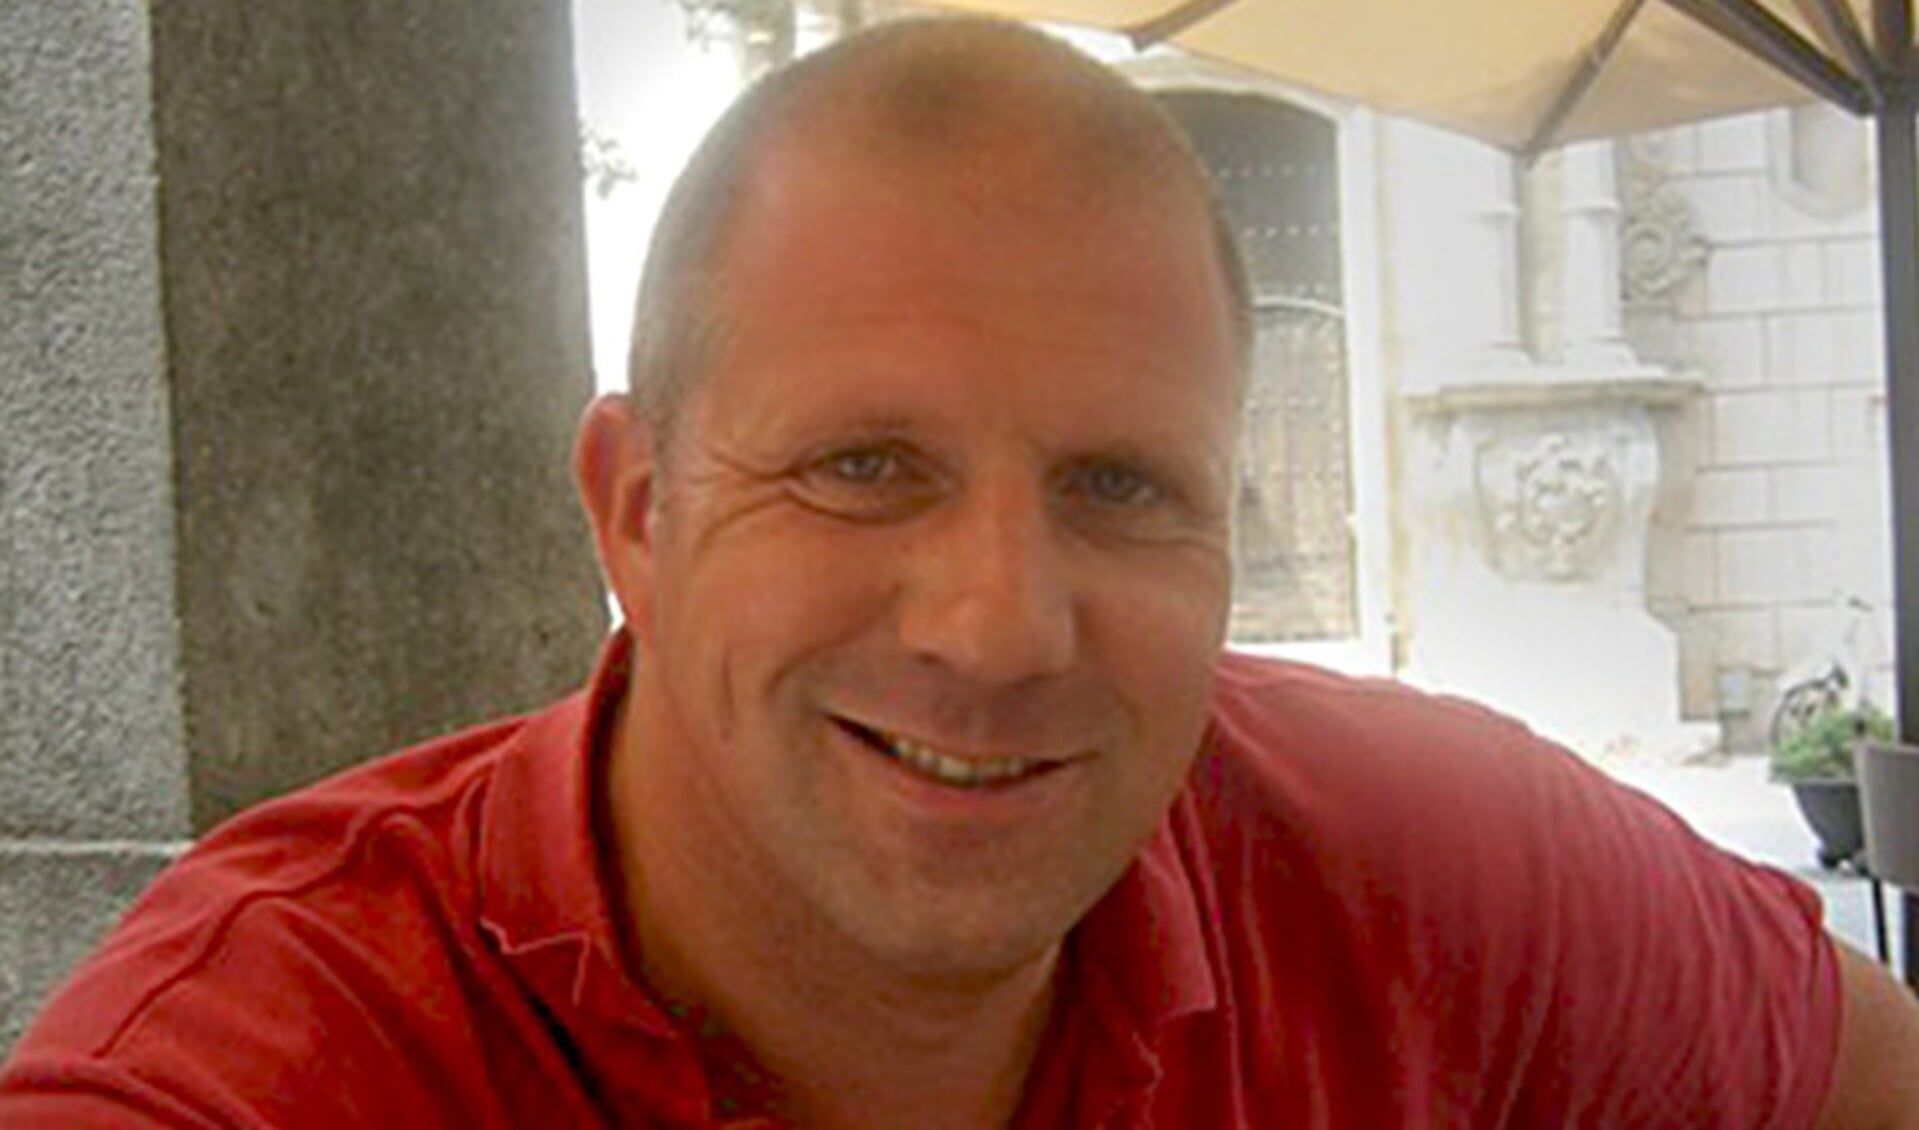 Rob Zweekhorst werd in 2014 doodgeschoten in Berkel en Rodenrijs.